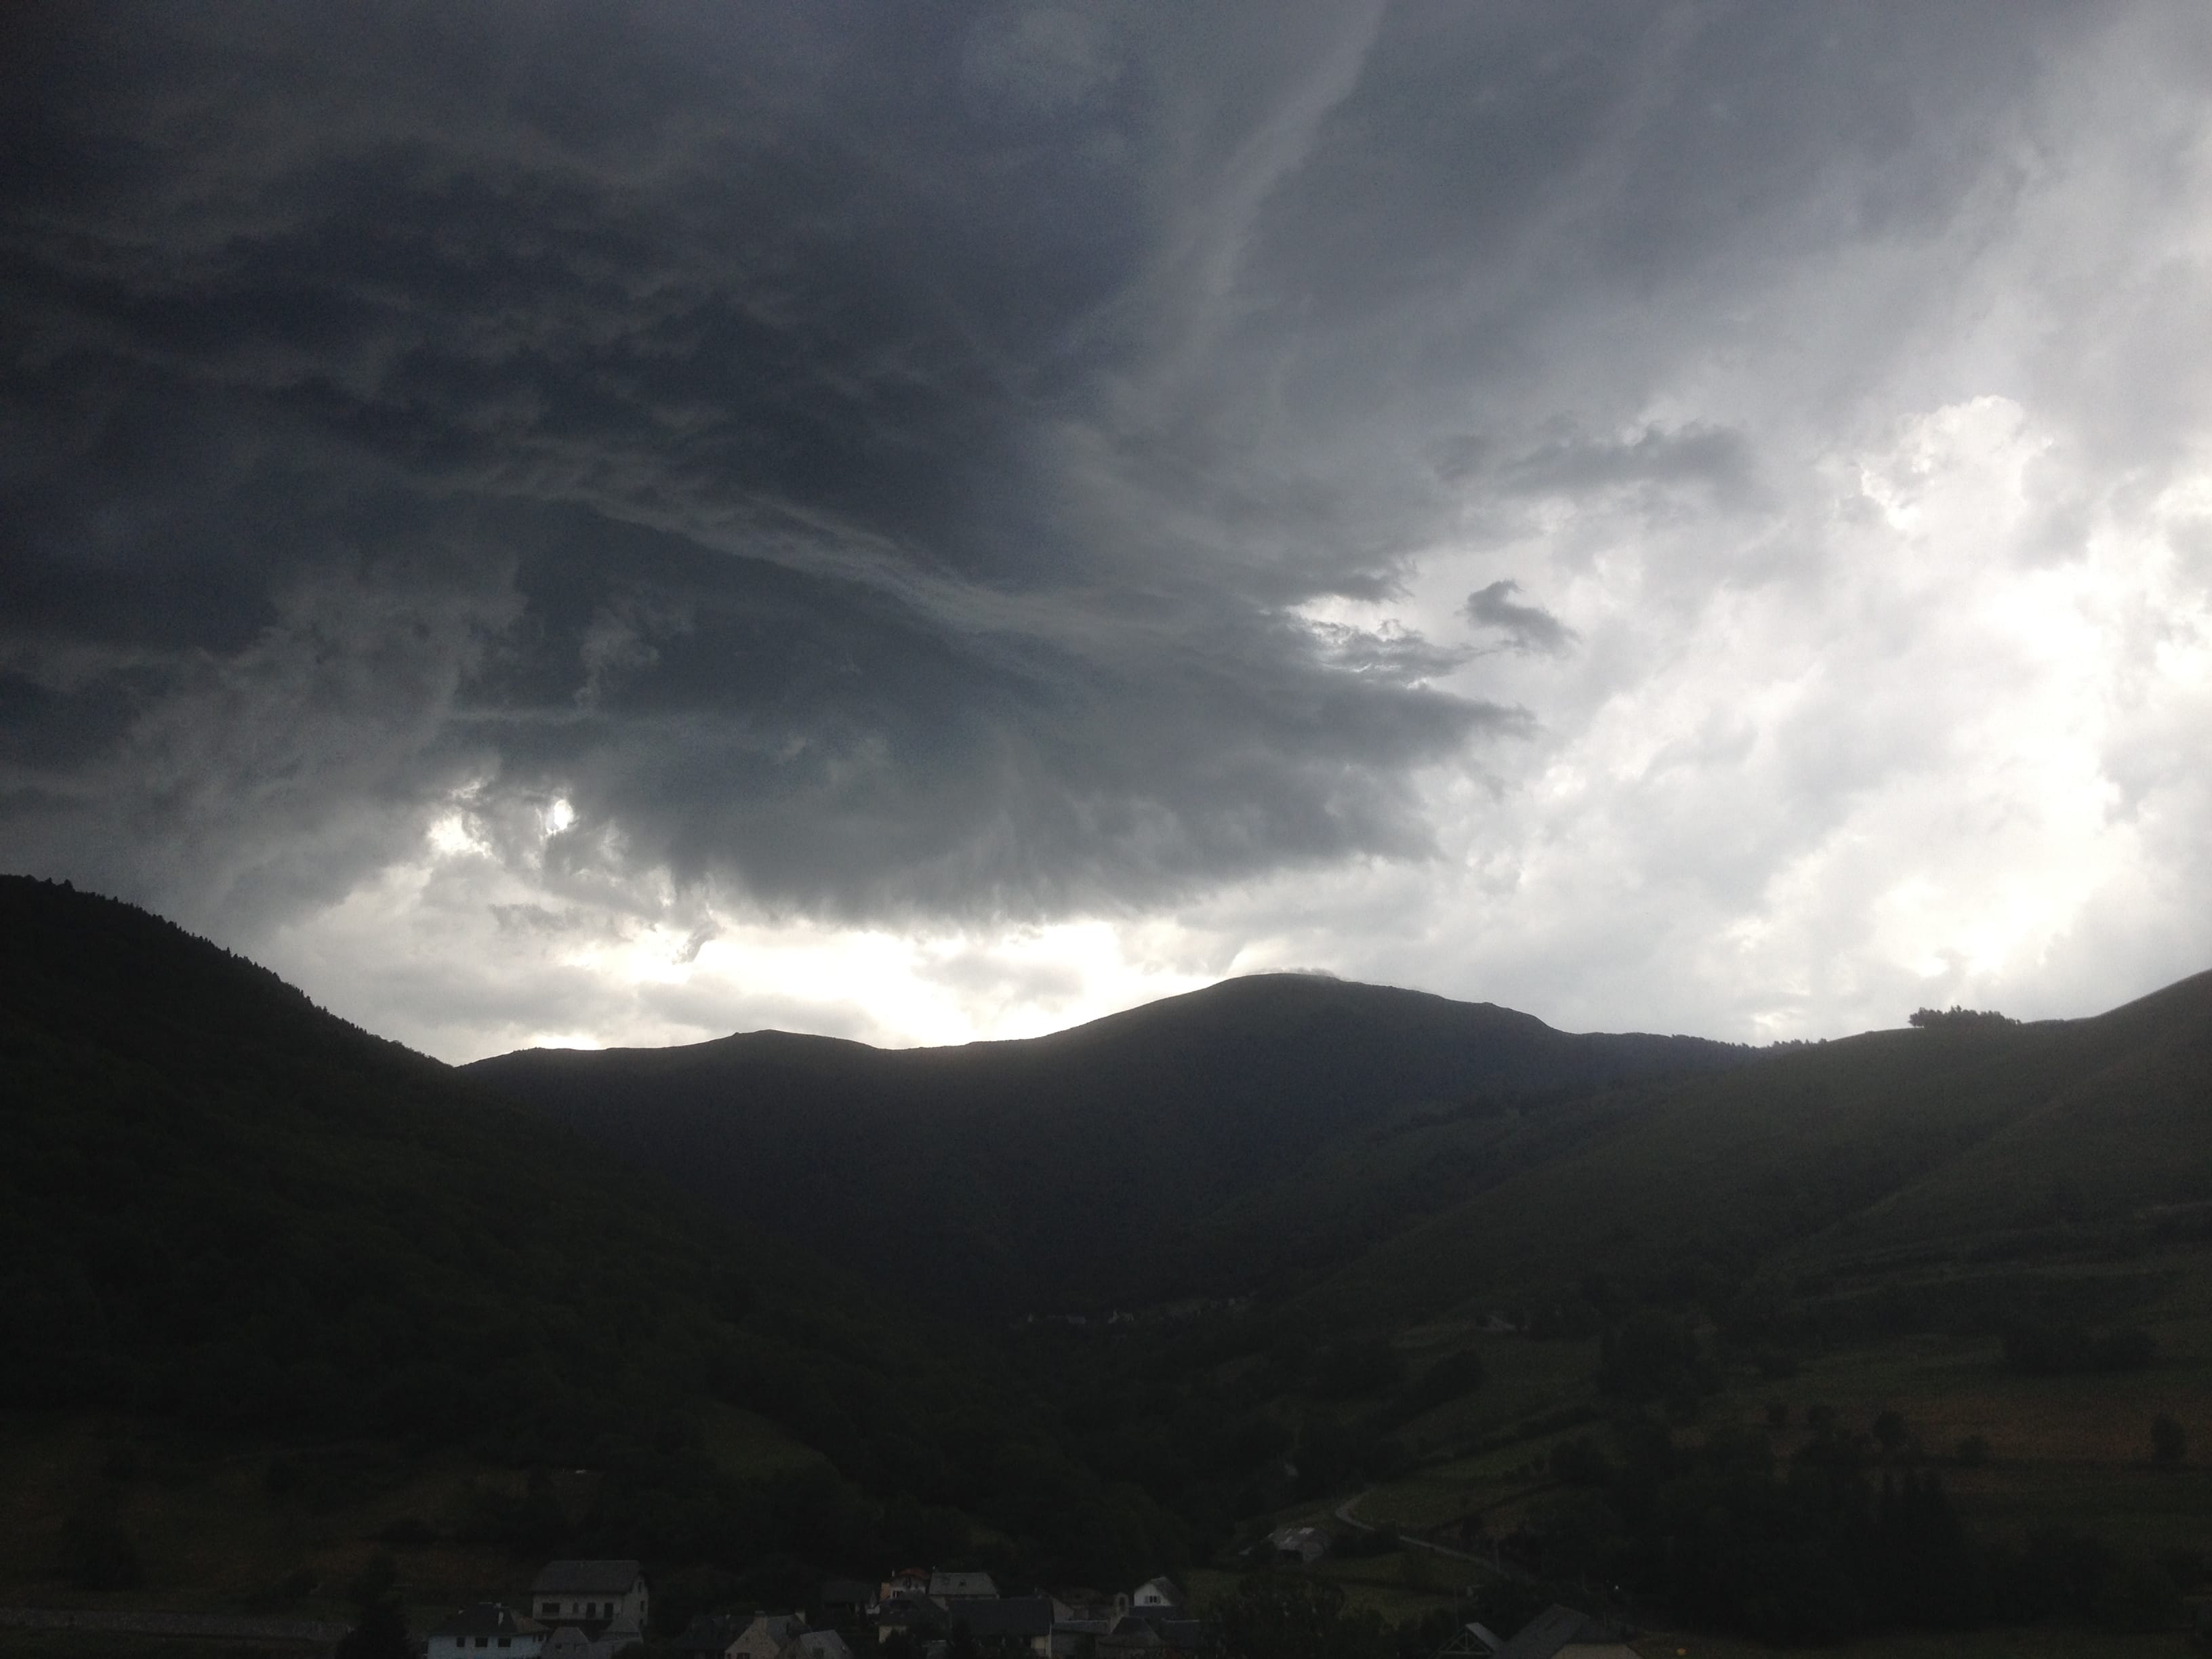 Orage à Arreau, dans les Hautes-Pyrénées, en fin d'après-midi. - 04/07/2016 20:00 - Jean-Michel Tessier